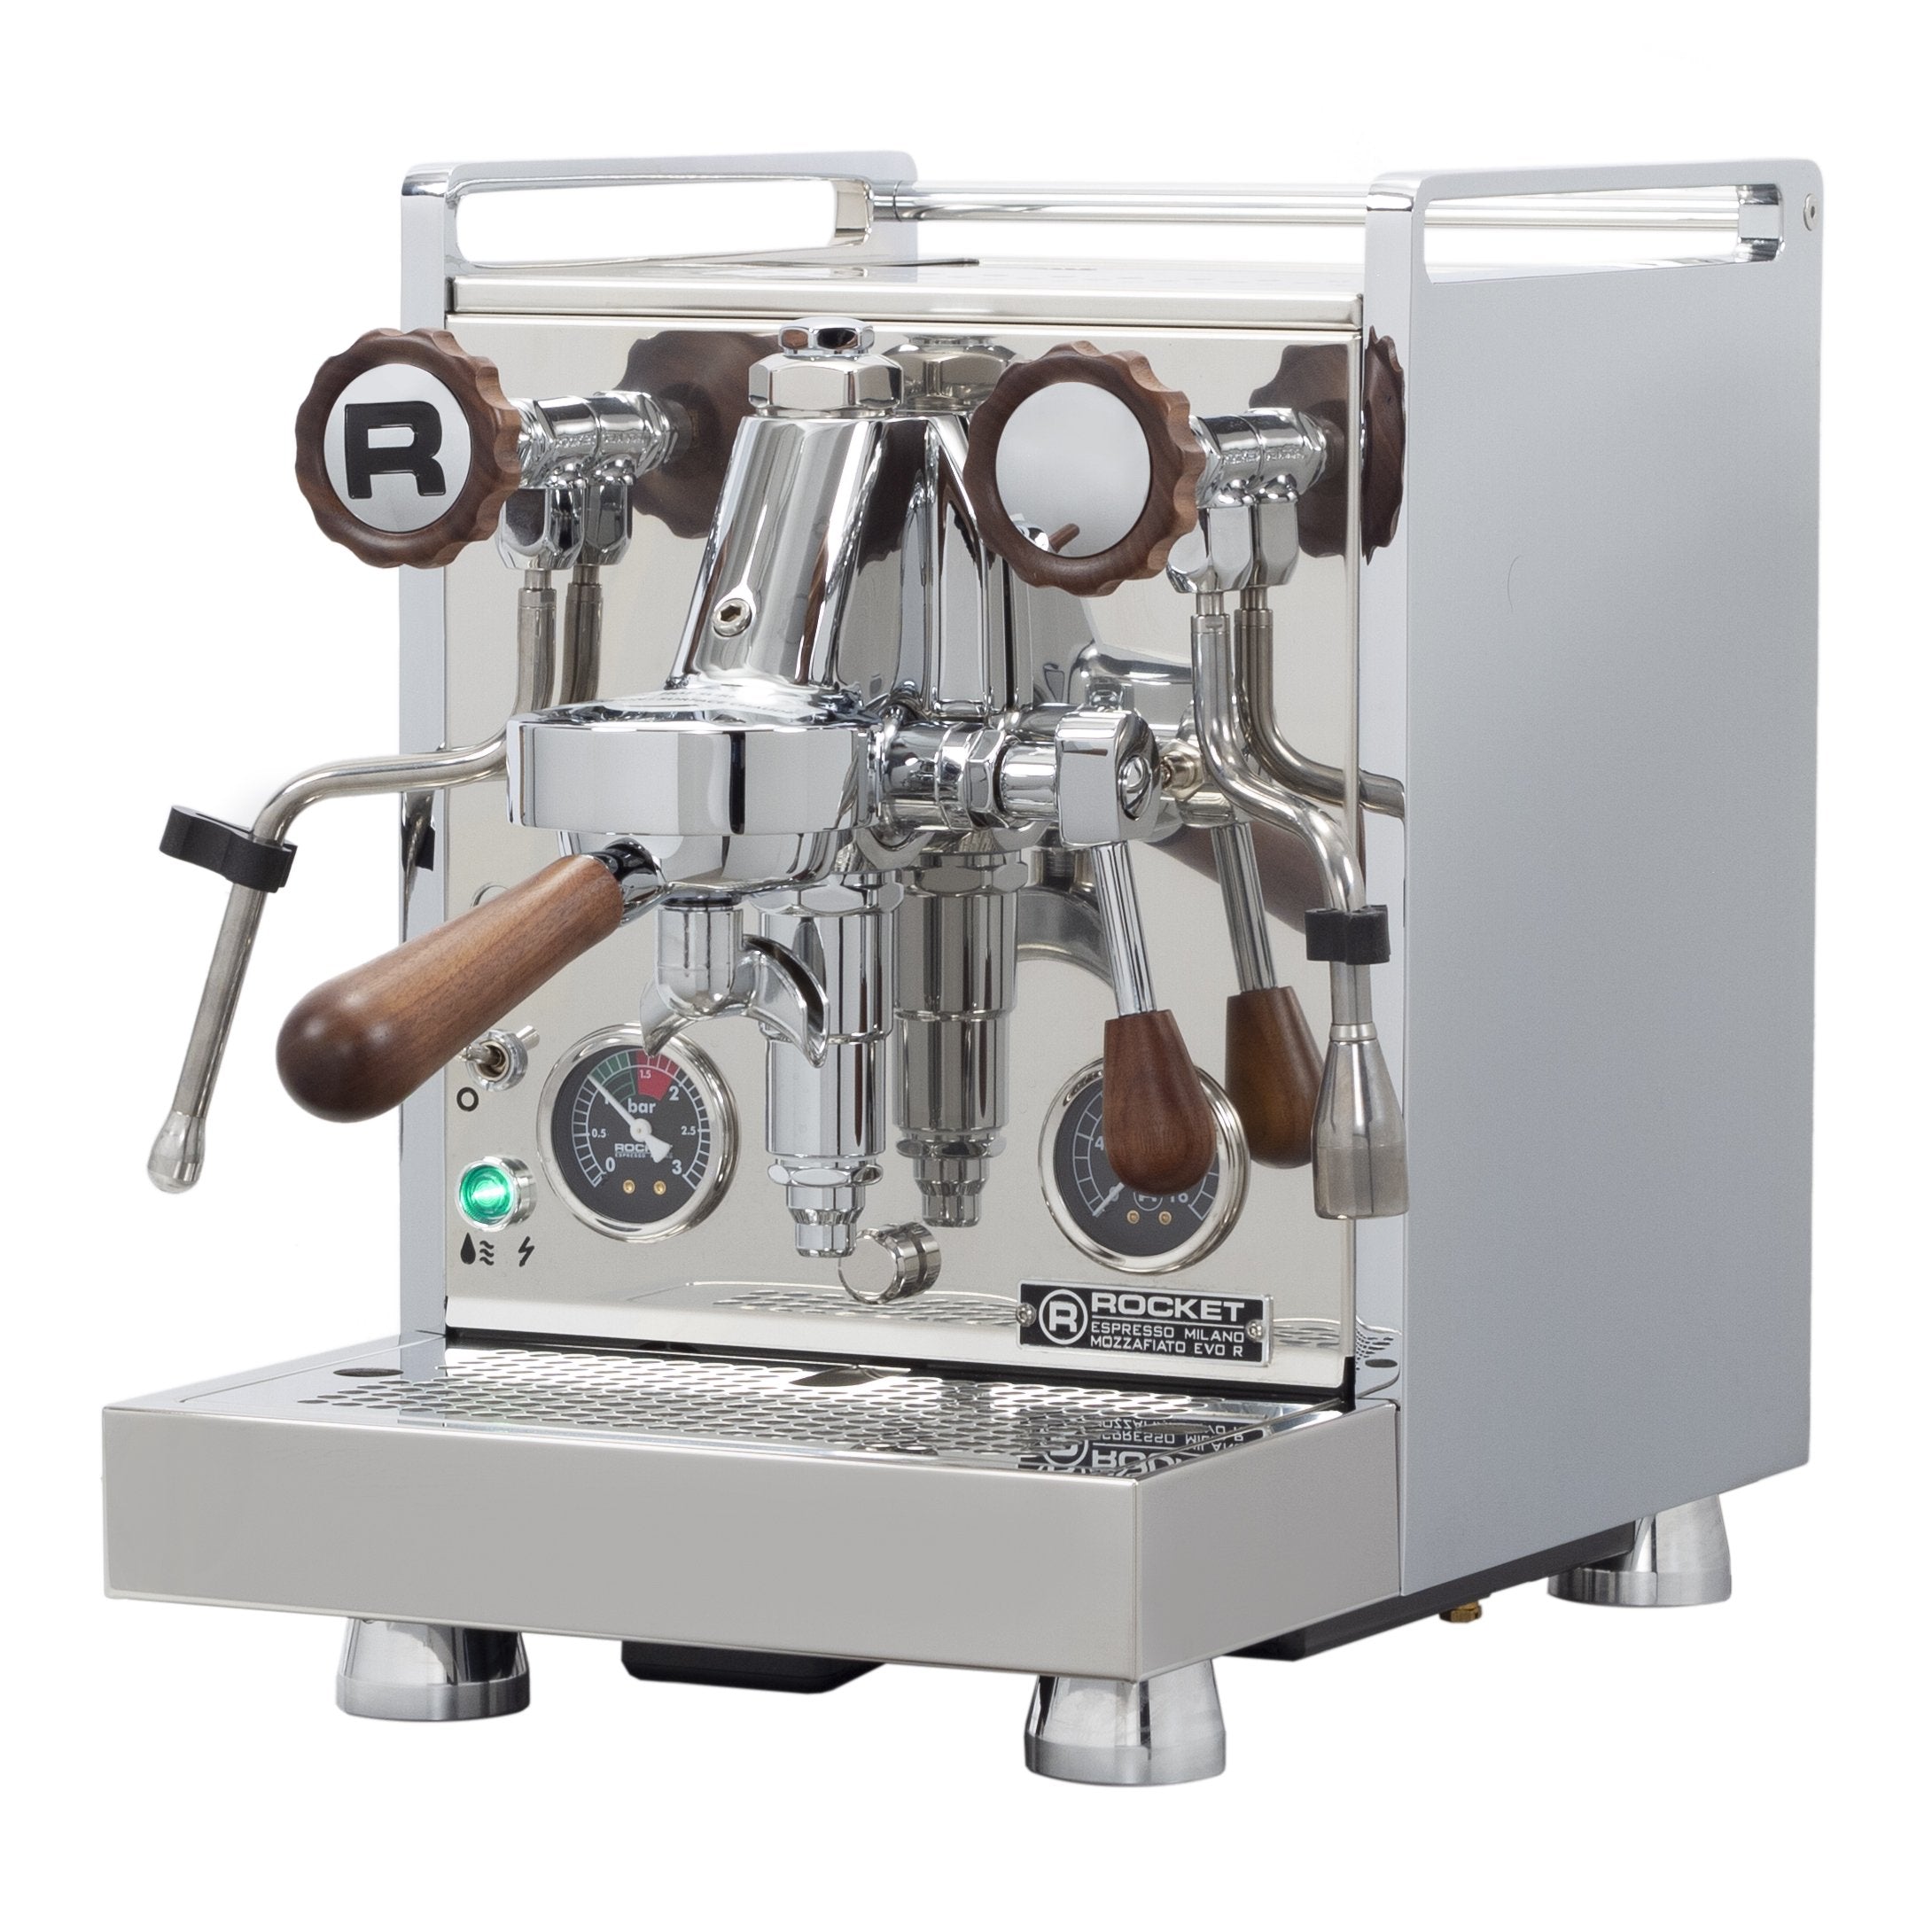 Rocket Espresso Mozzafiato Cronometro R Espresso Machine - Walnut Acce